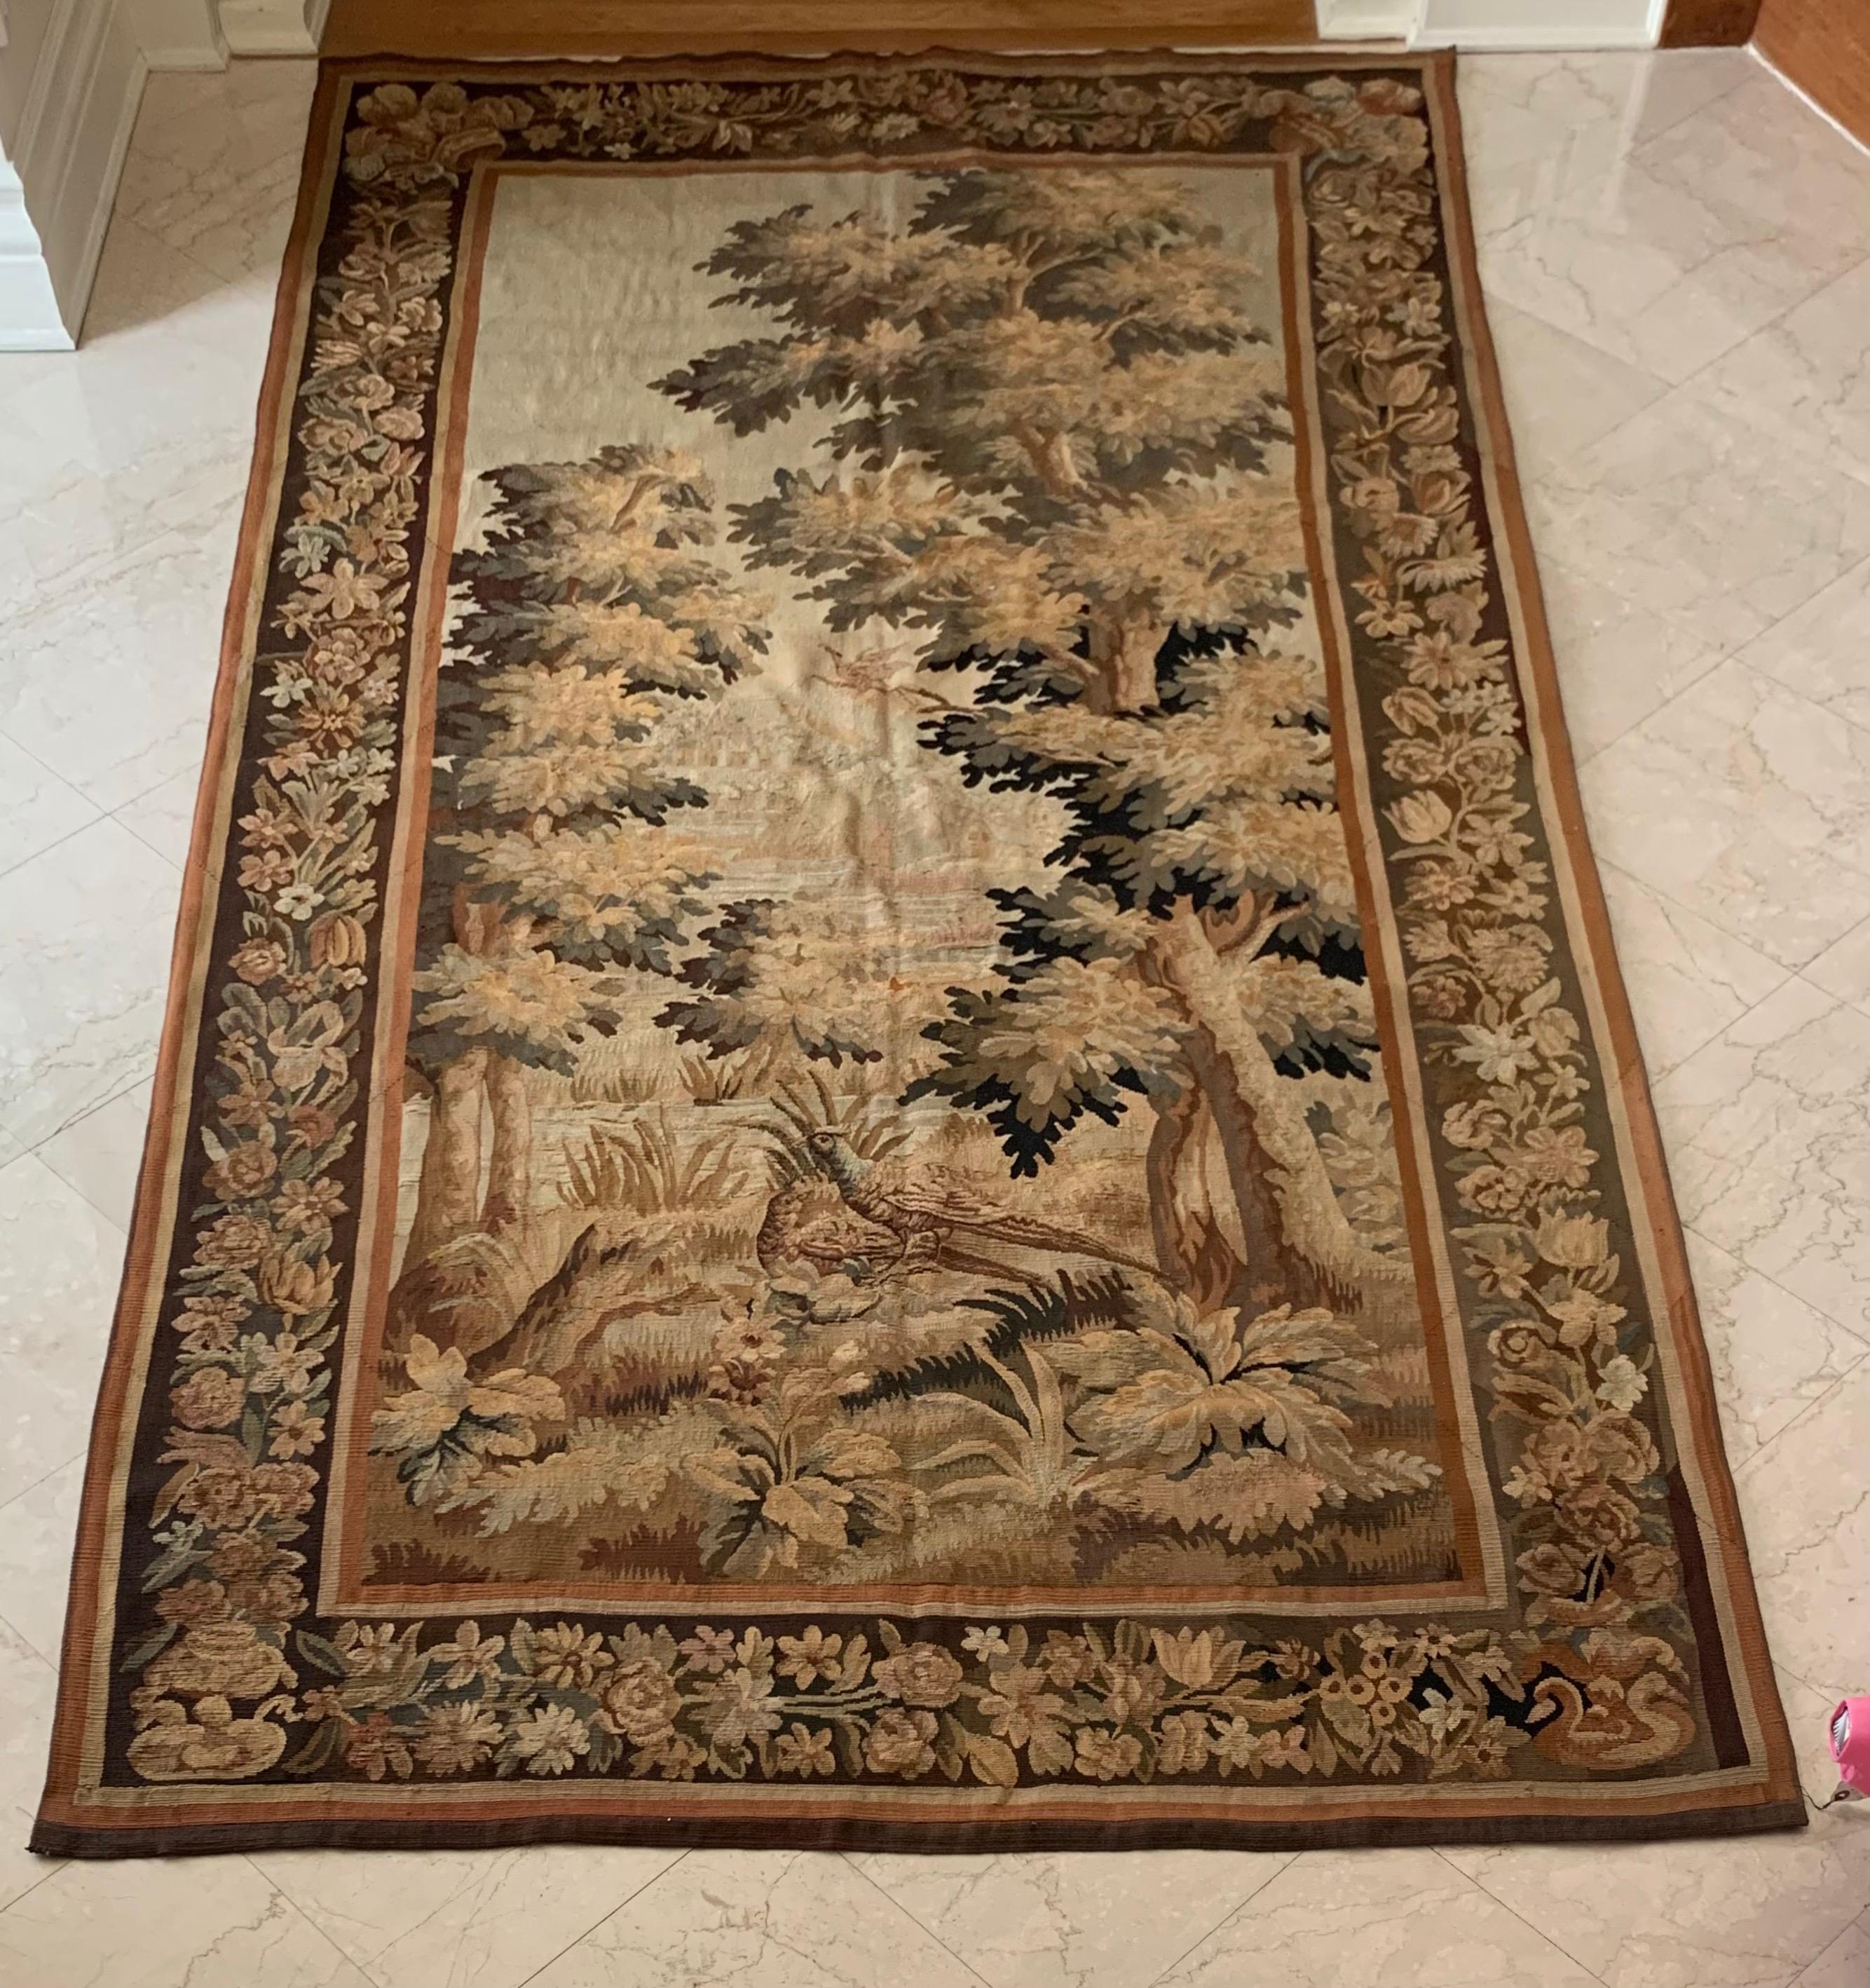 Il s'agit d'une belle tapisserie de verdure française du 19ème siècle représentant une belle scène estivale d'une campagne avec des arbres luxuriants et des oiseaux. Elle présente une bordure ornée de fleurs et de guirlandes et constitue un exemple